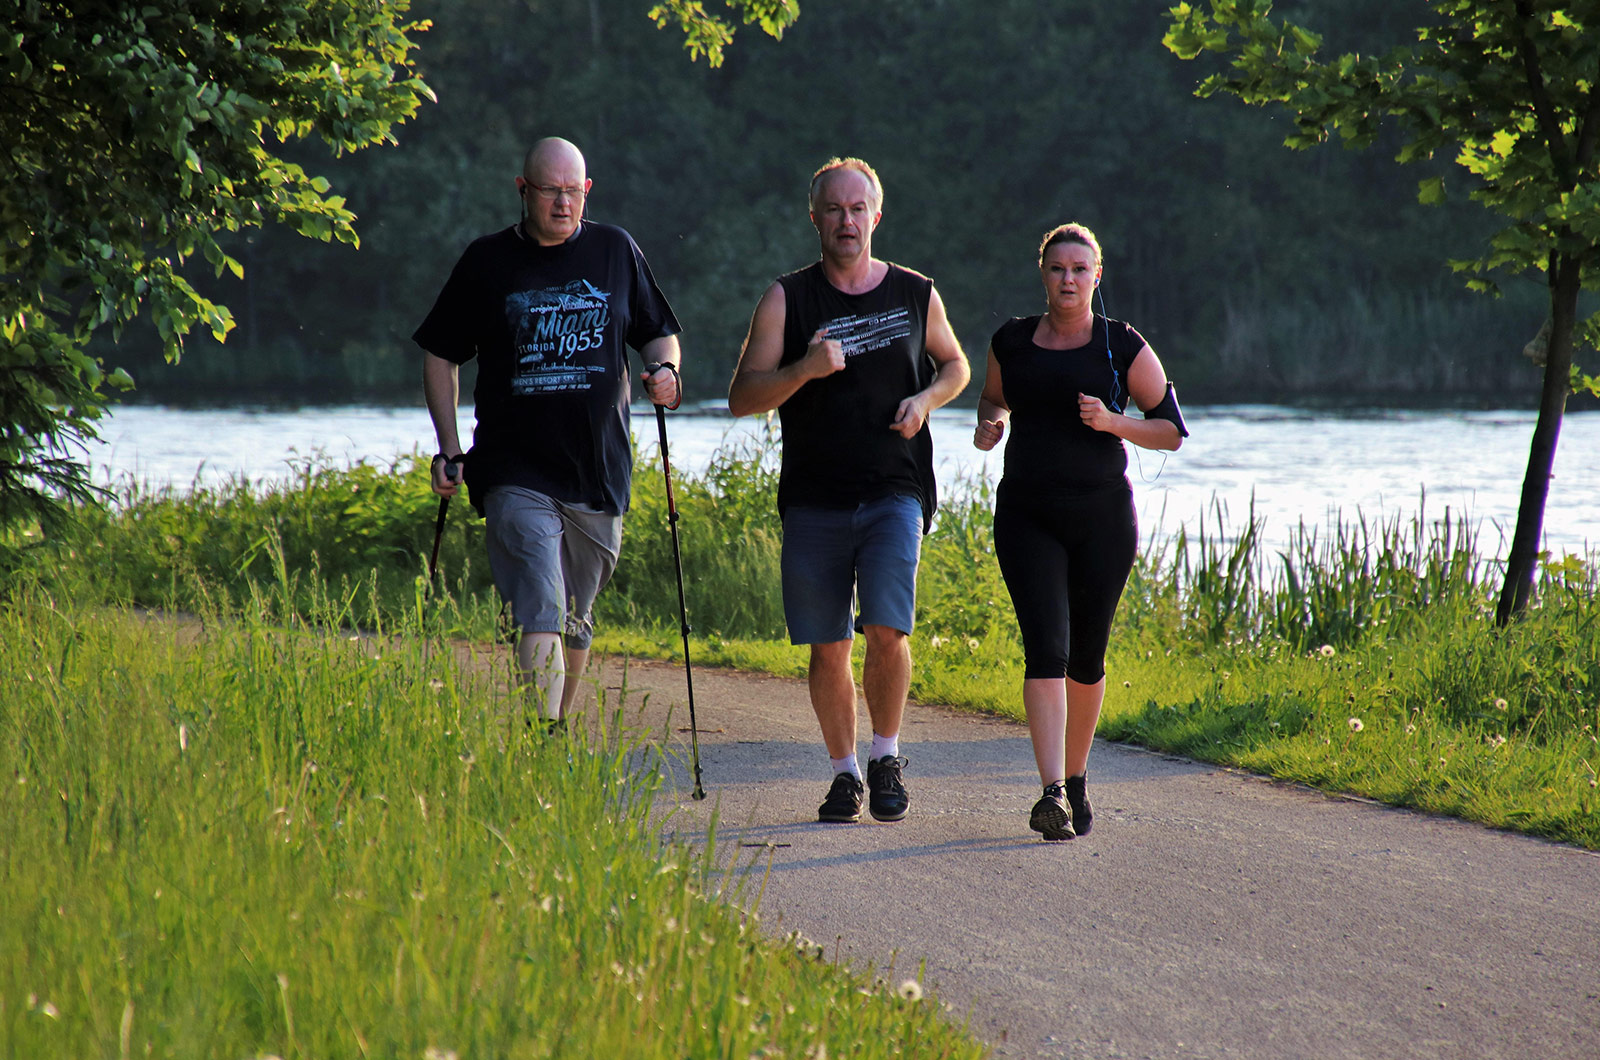 Gruppe beim Walking, eine Frau und zwei Männer beim Walking in einem Park um einen See